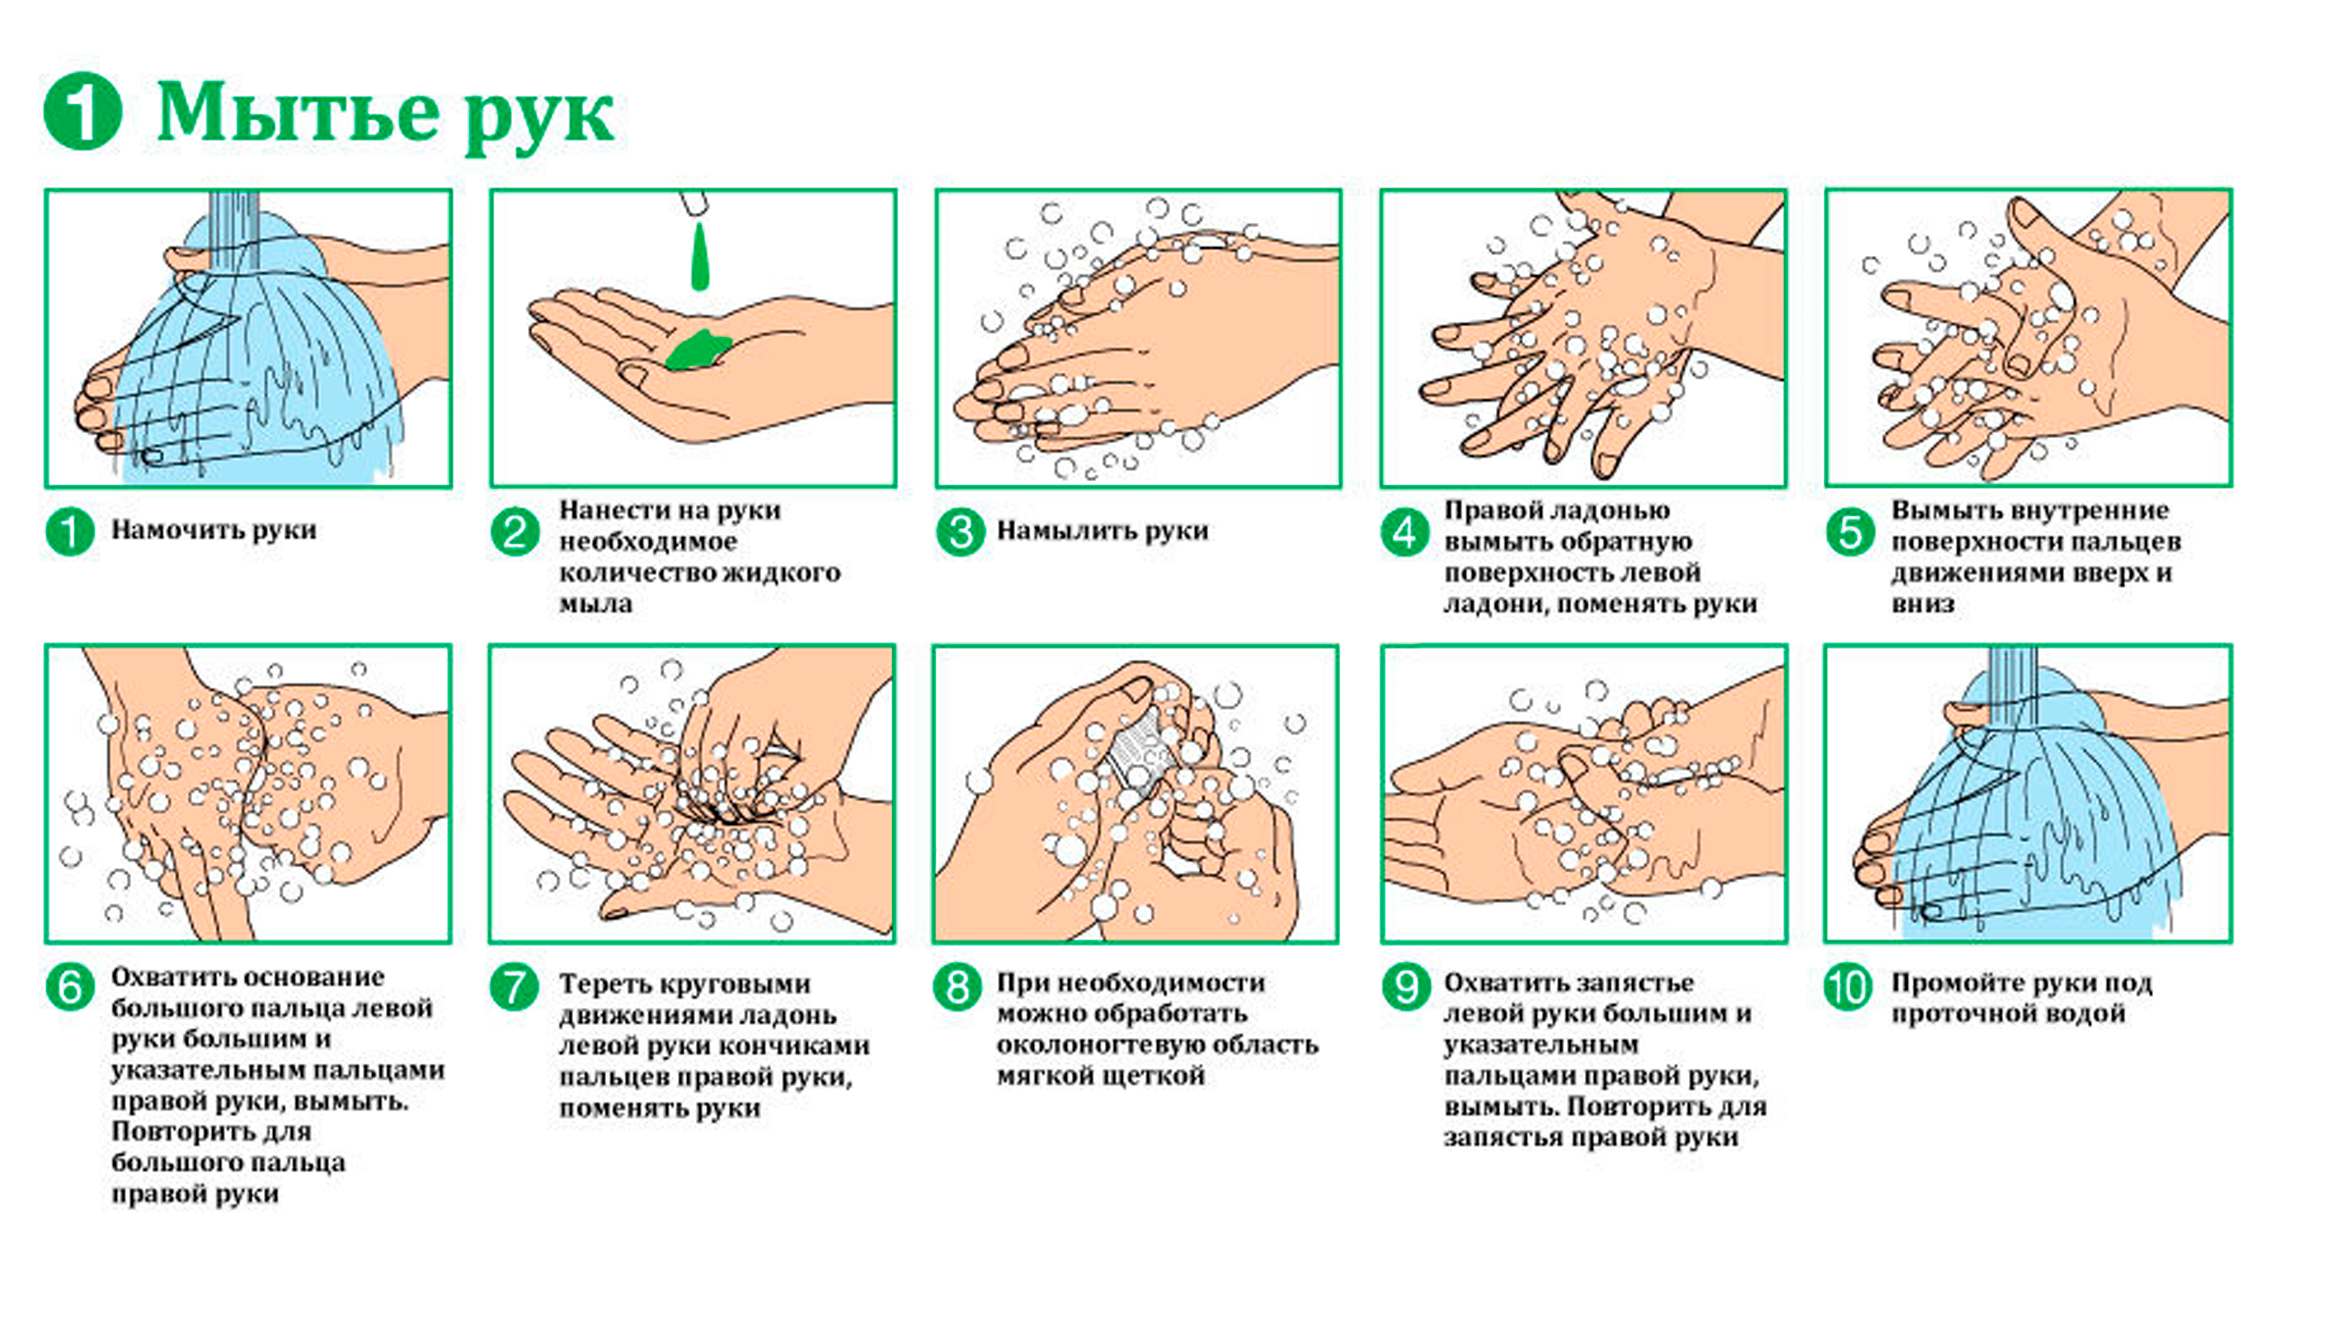 Приказ мытья рук. Гигиенический метод мытья рук алгоритм. Алгоритм обработки рук гигиеническим способом алгоритм. Схема гигиенического мытья рук медперсонала. Схема гигиенический способ мытья рук.